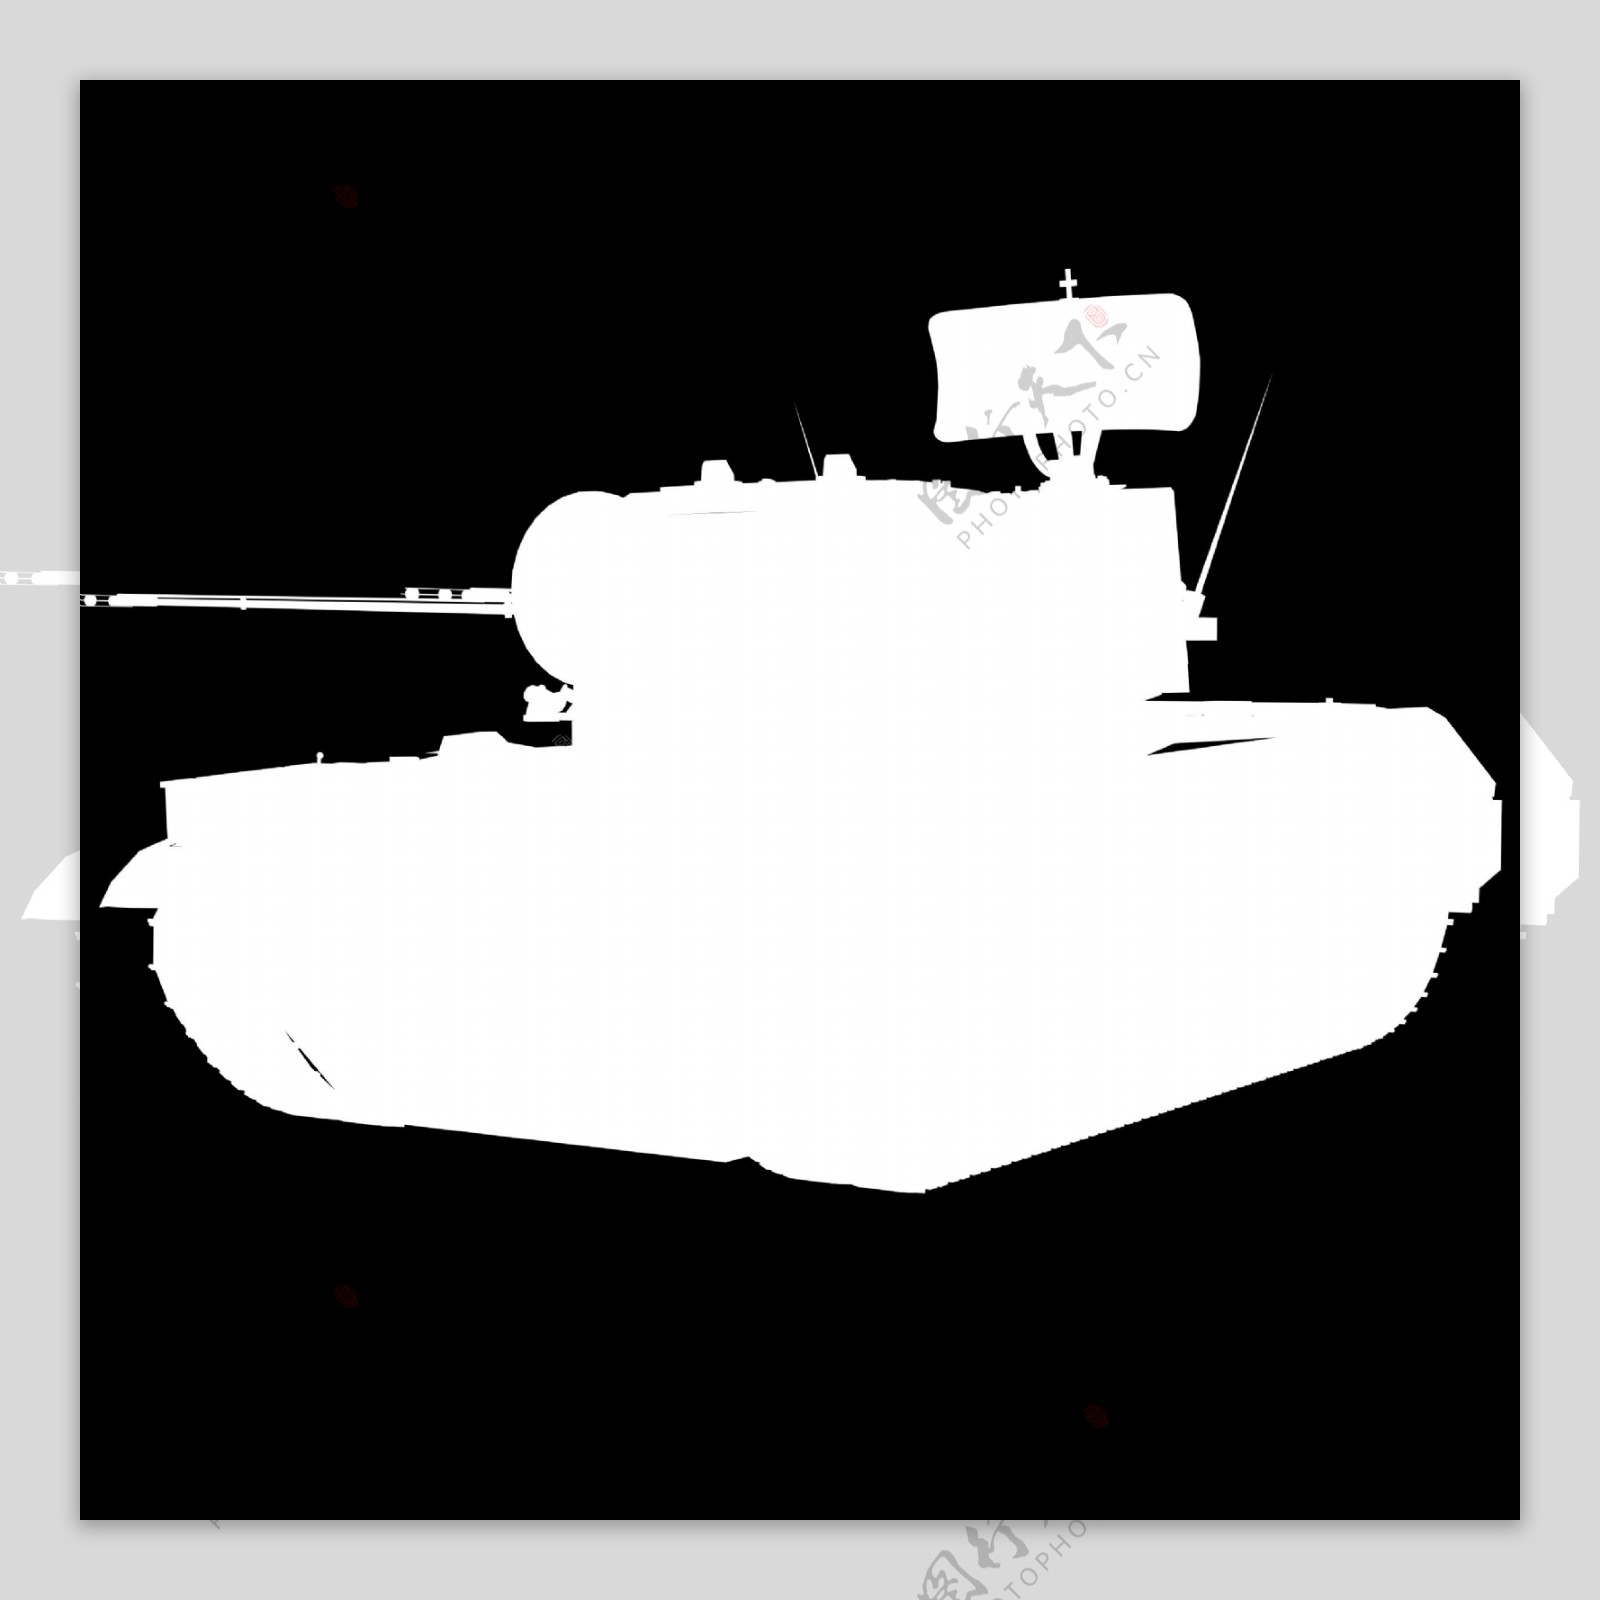 坦克兵器3D模型素材11